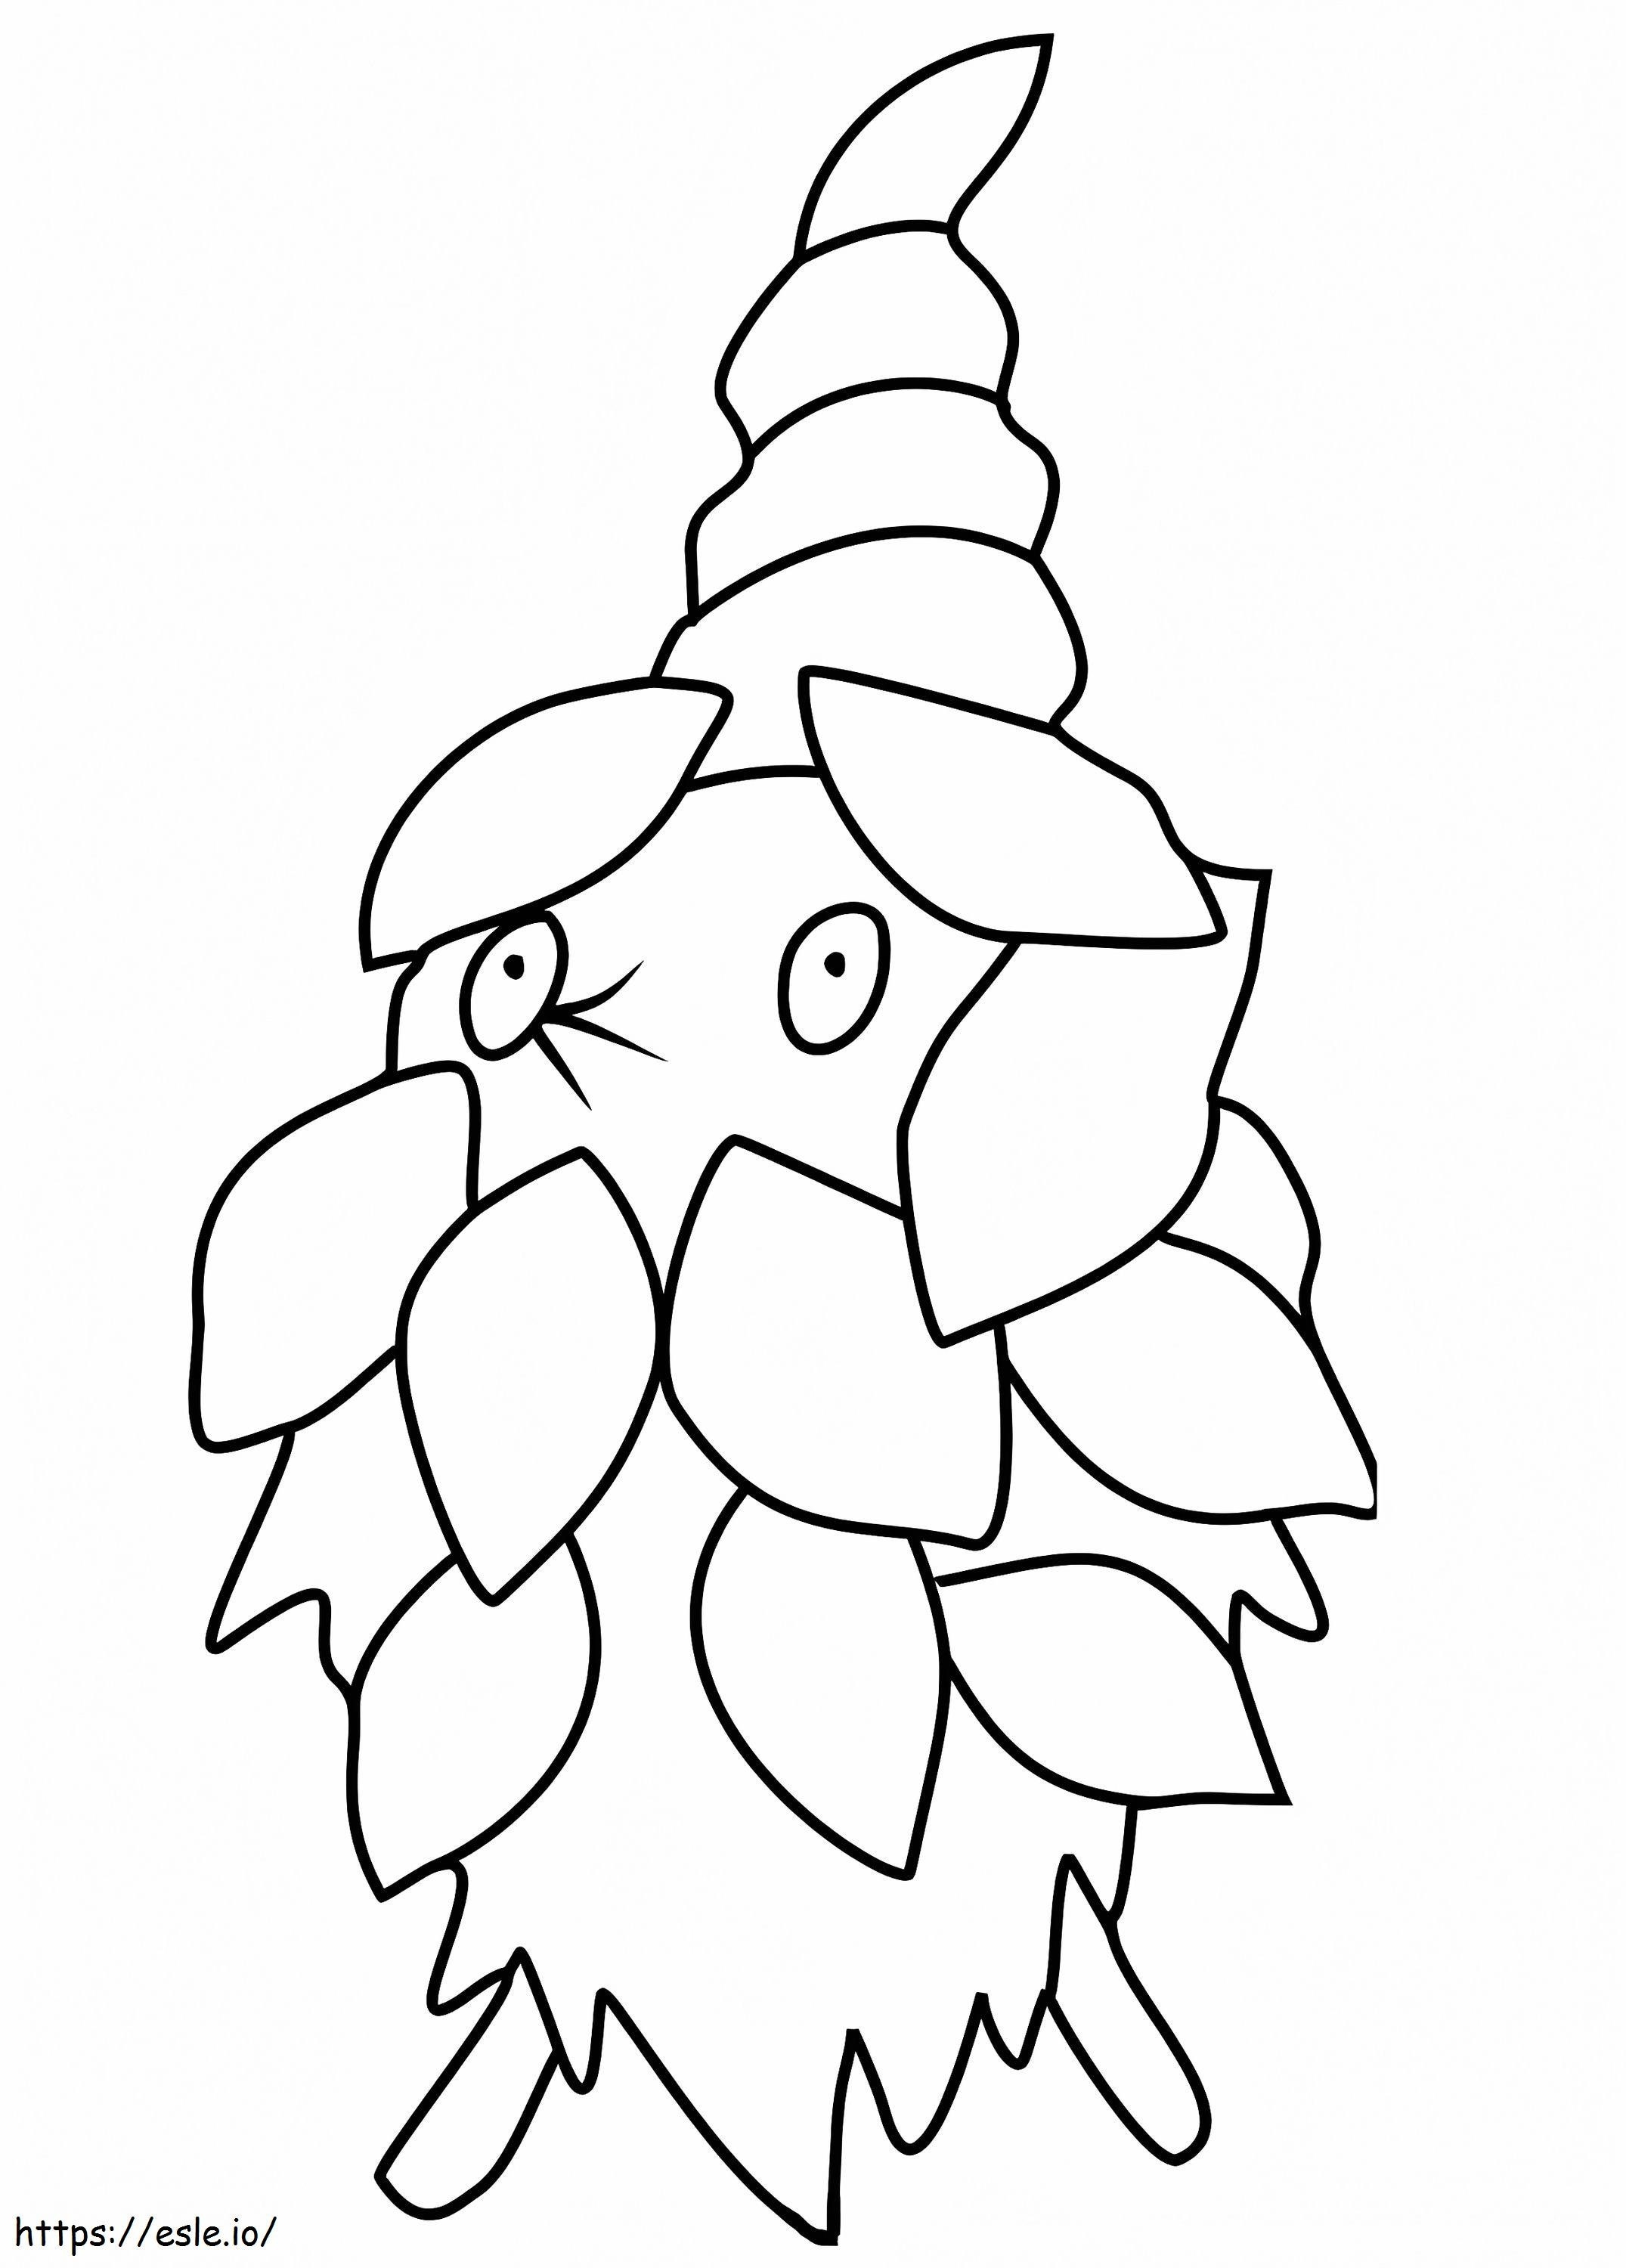 Coloriage Pokémon Burmy Gen 4 à imprimer dessin